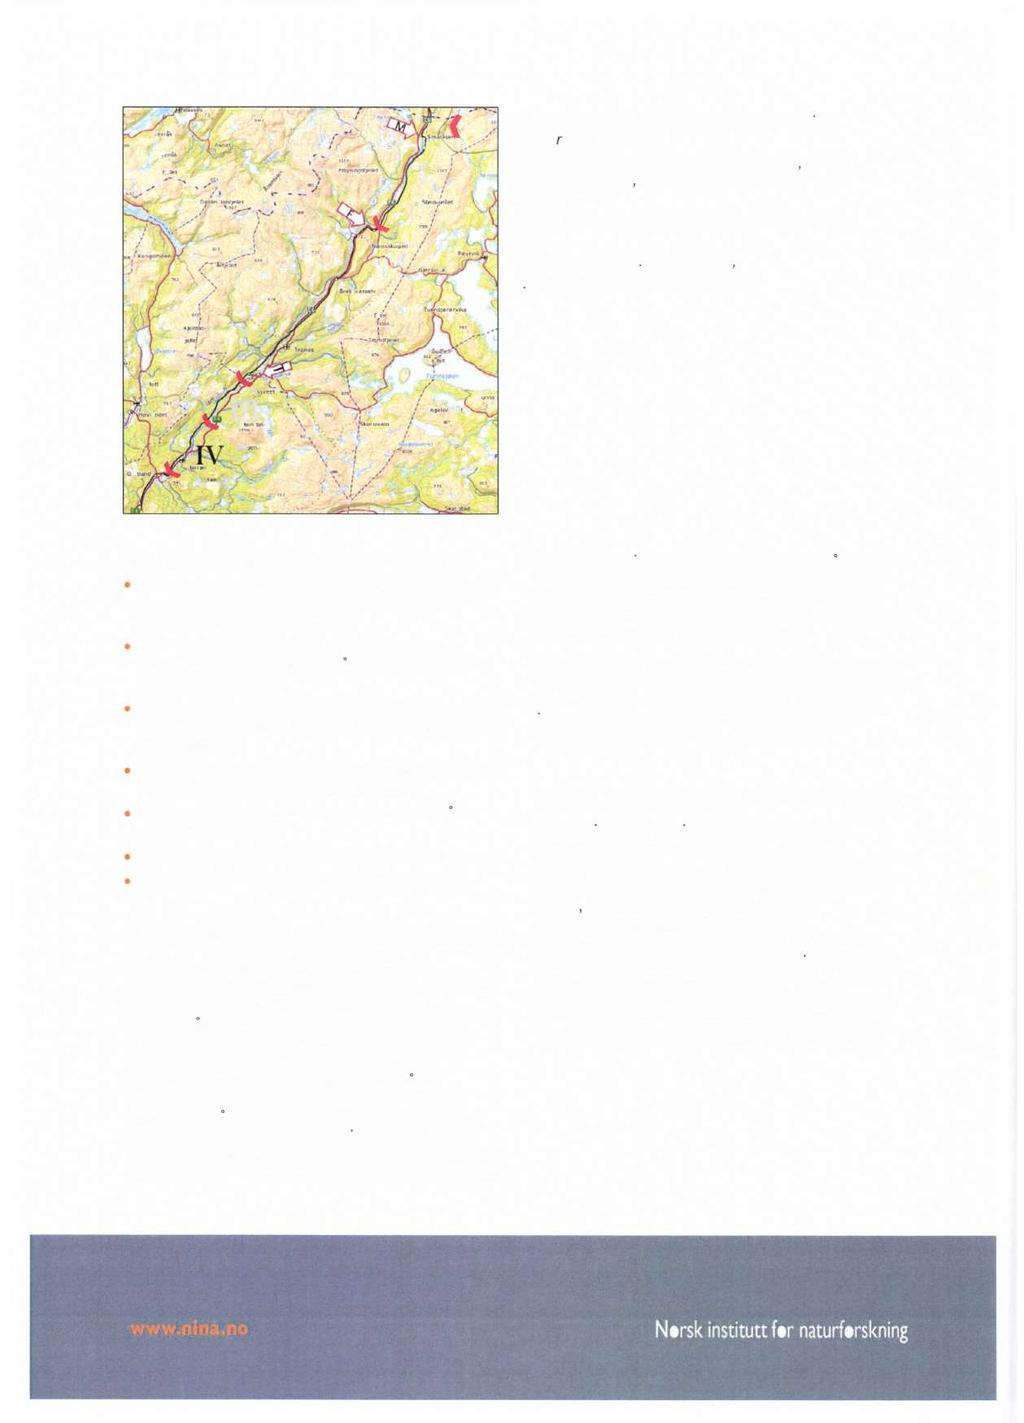 Oversikt over Øvre Namsen. Røde vinkler viser (ovenfra og nedover): Namskroken (øvre grense for namsblank), terskel ved Namsskogan, Åsmulfoss, Aunfoss og Nedre Fiskumfoss.